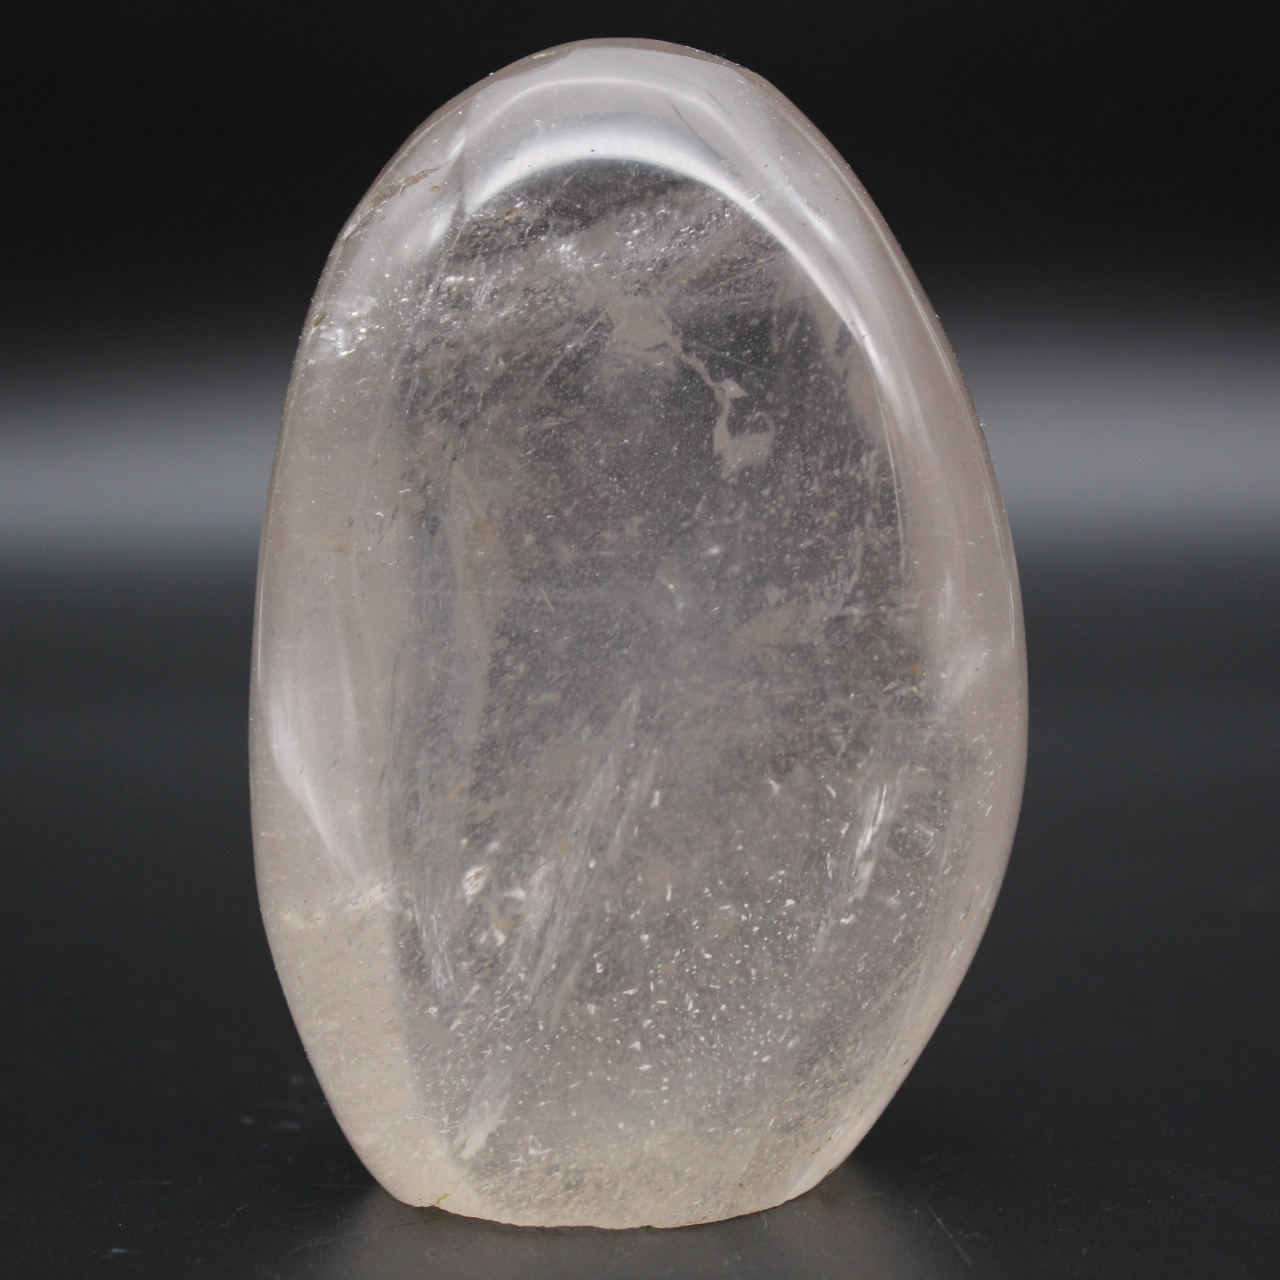 Natural rock crystal quartz stone